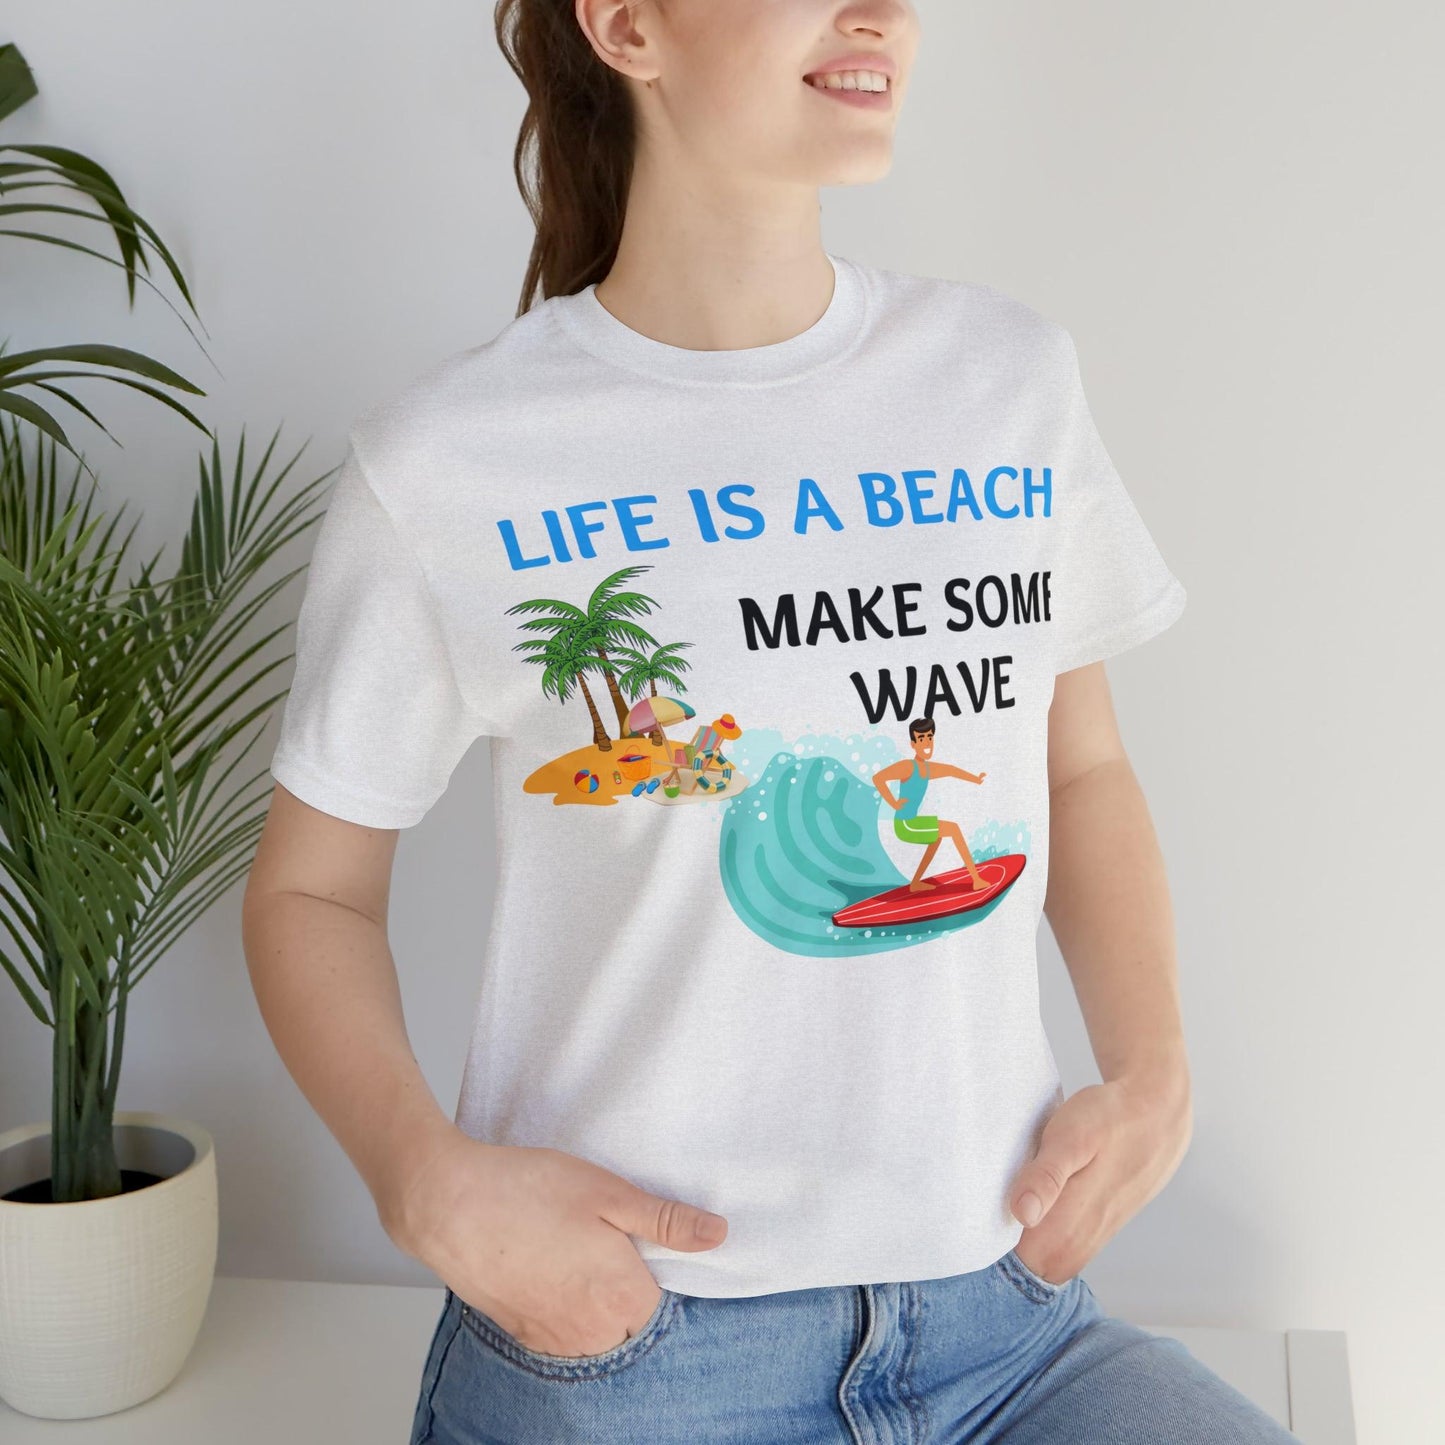 Life is a Beach shirt, Beach t-shirt, Summer shirt, Relaxing beachwear, Coastal fashion, Beach-inspired clothing, Beach adventure apparel